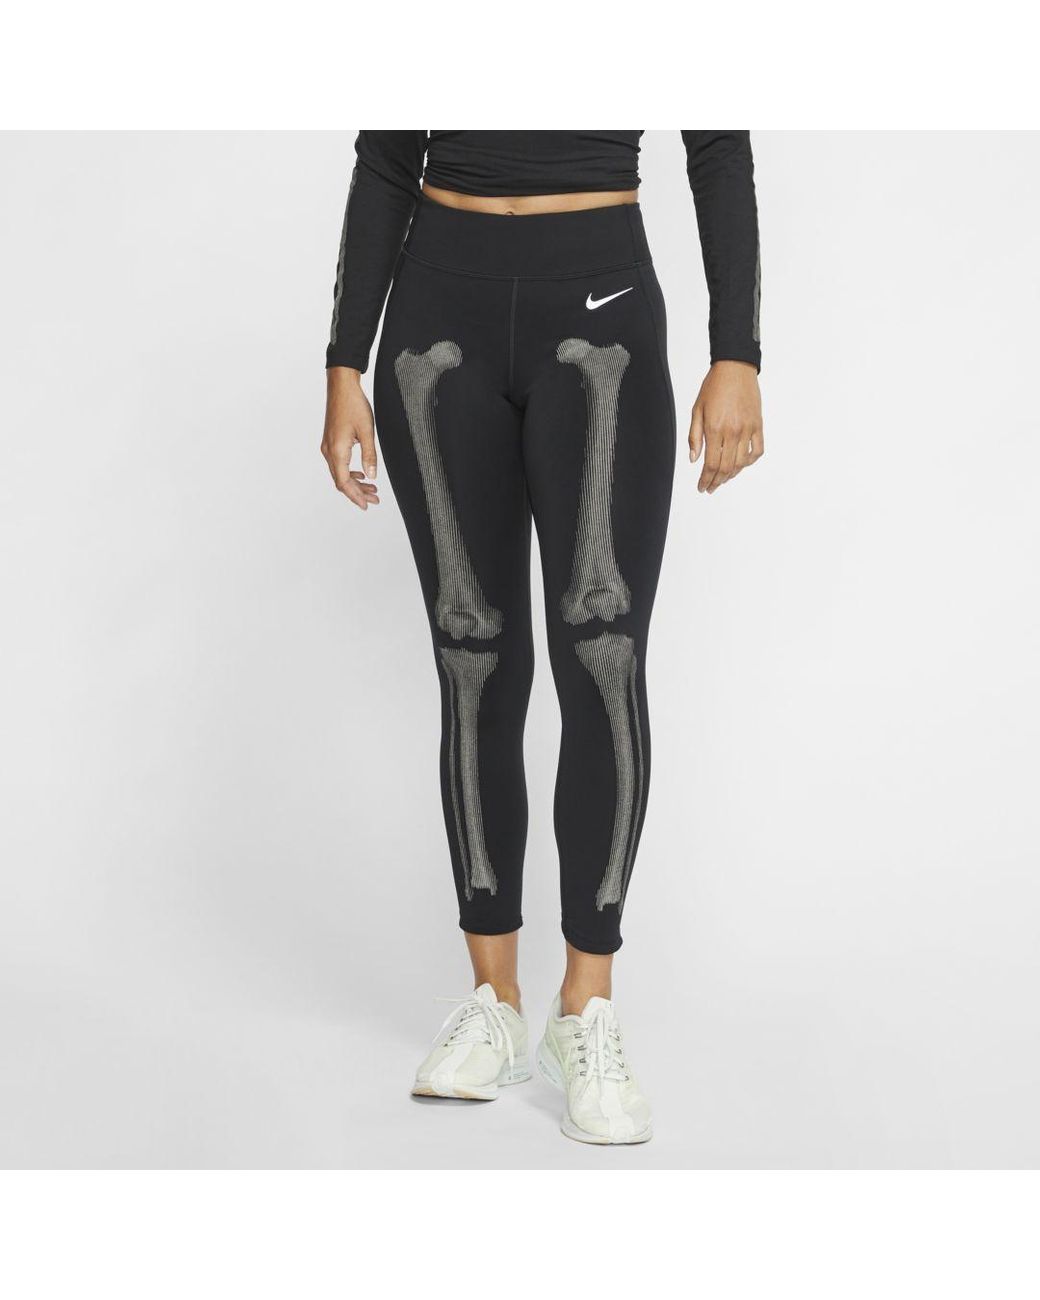 Nike Skeleton Leggings in Black | Lyst